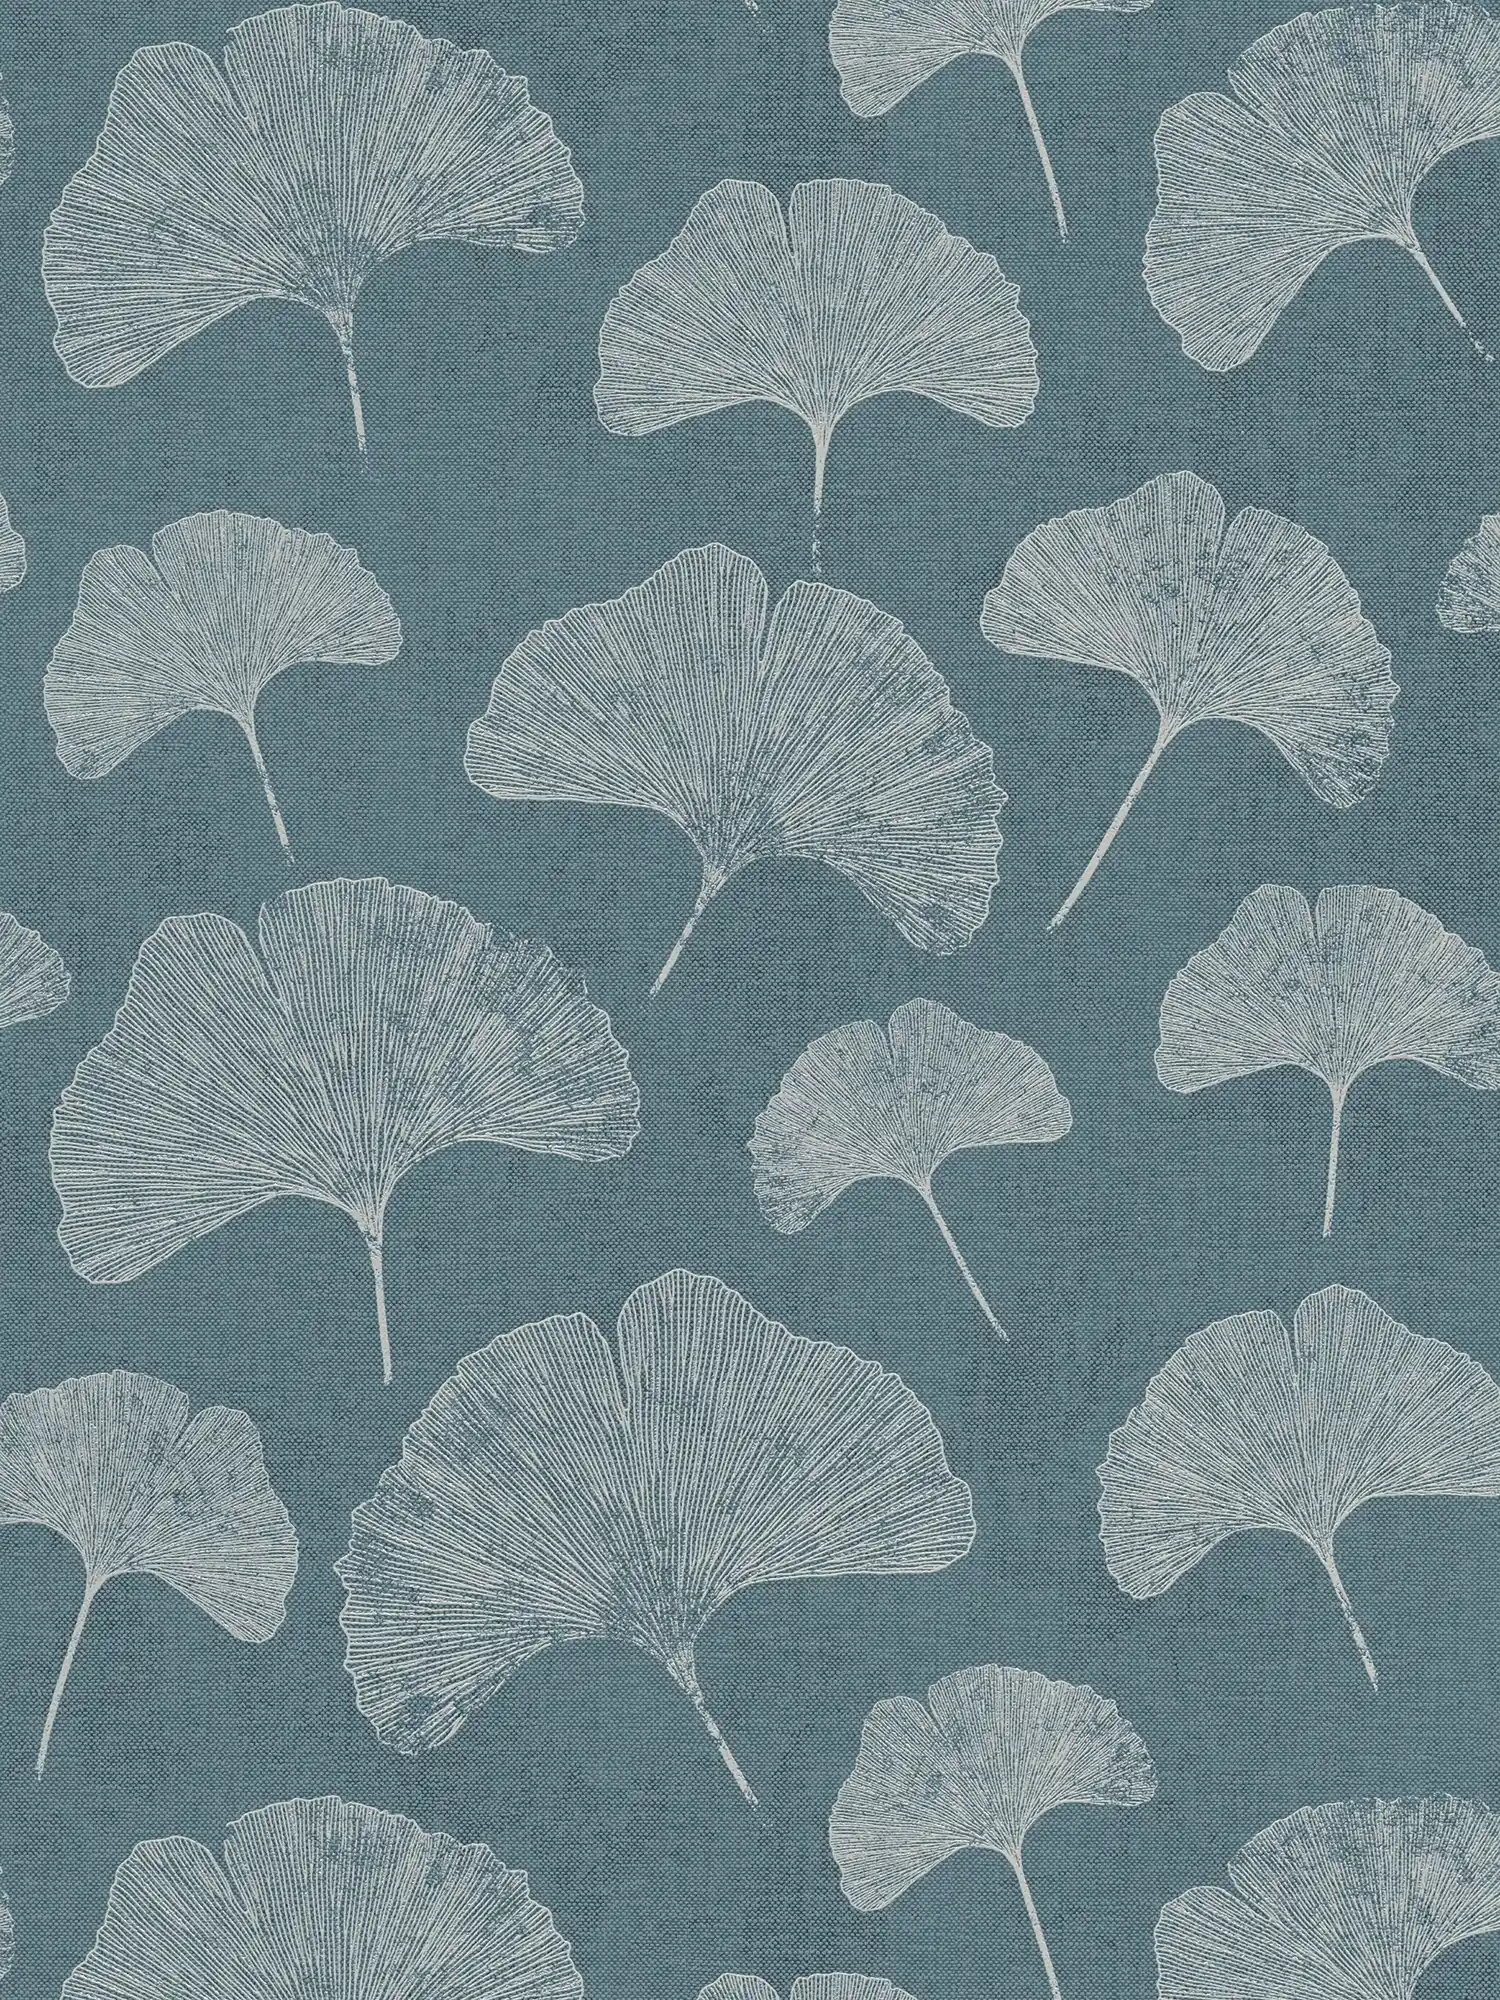 Bloemrijkbehang met matte bladerenstructuur - blauw, wit, zilver
